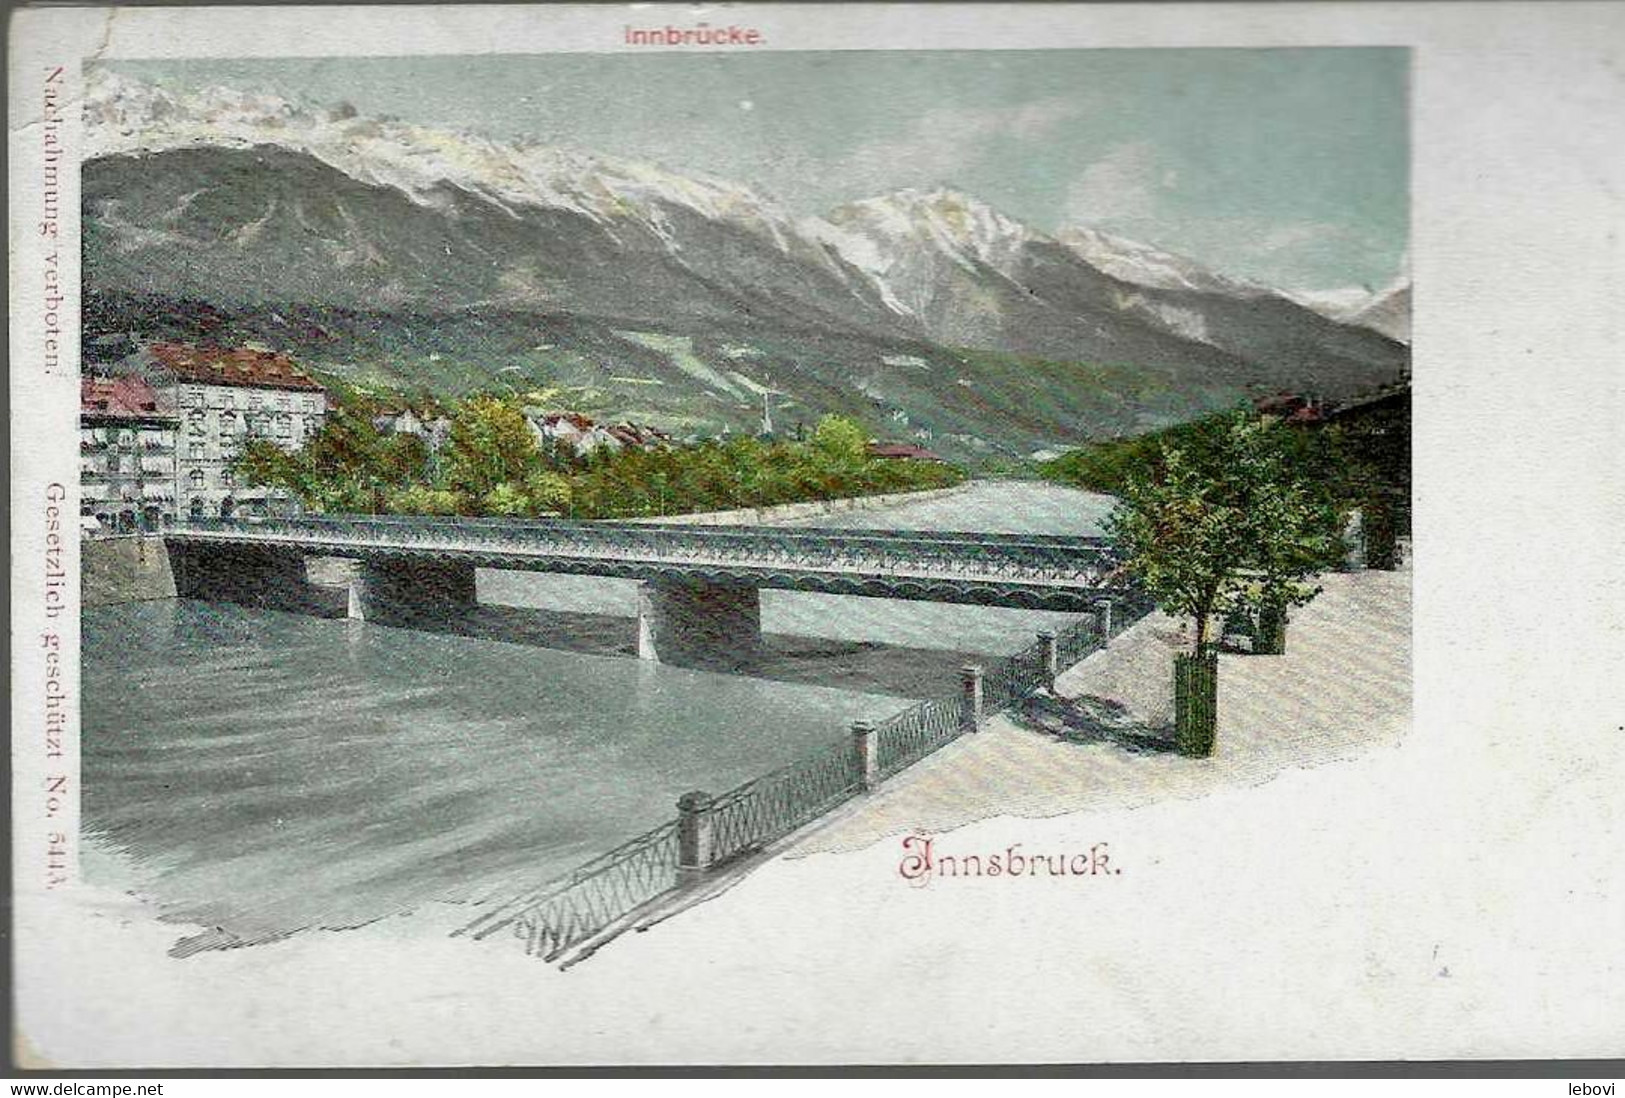 Autriche – INNBRUCK “Innsbrücke » – Verlag Joh. C. Klotz, Innsbruck - Zürs